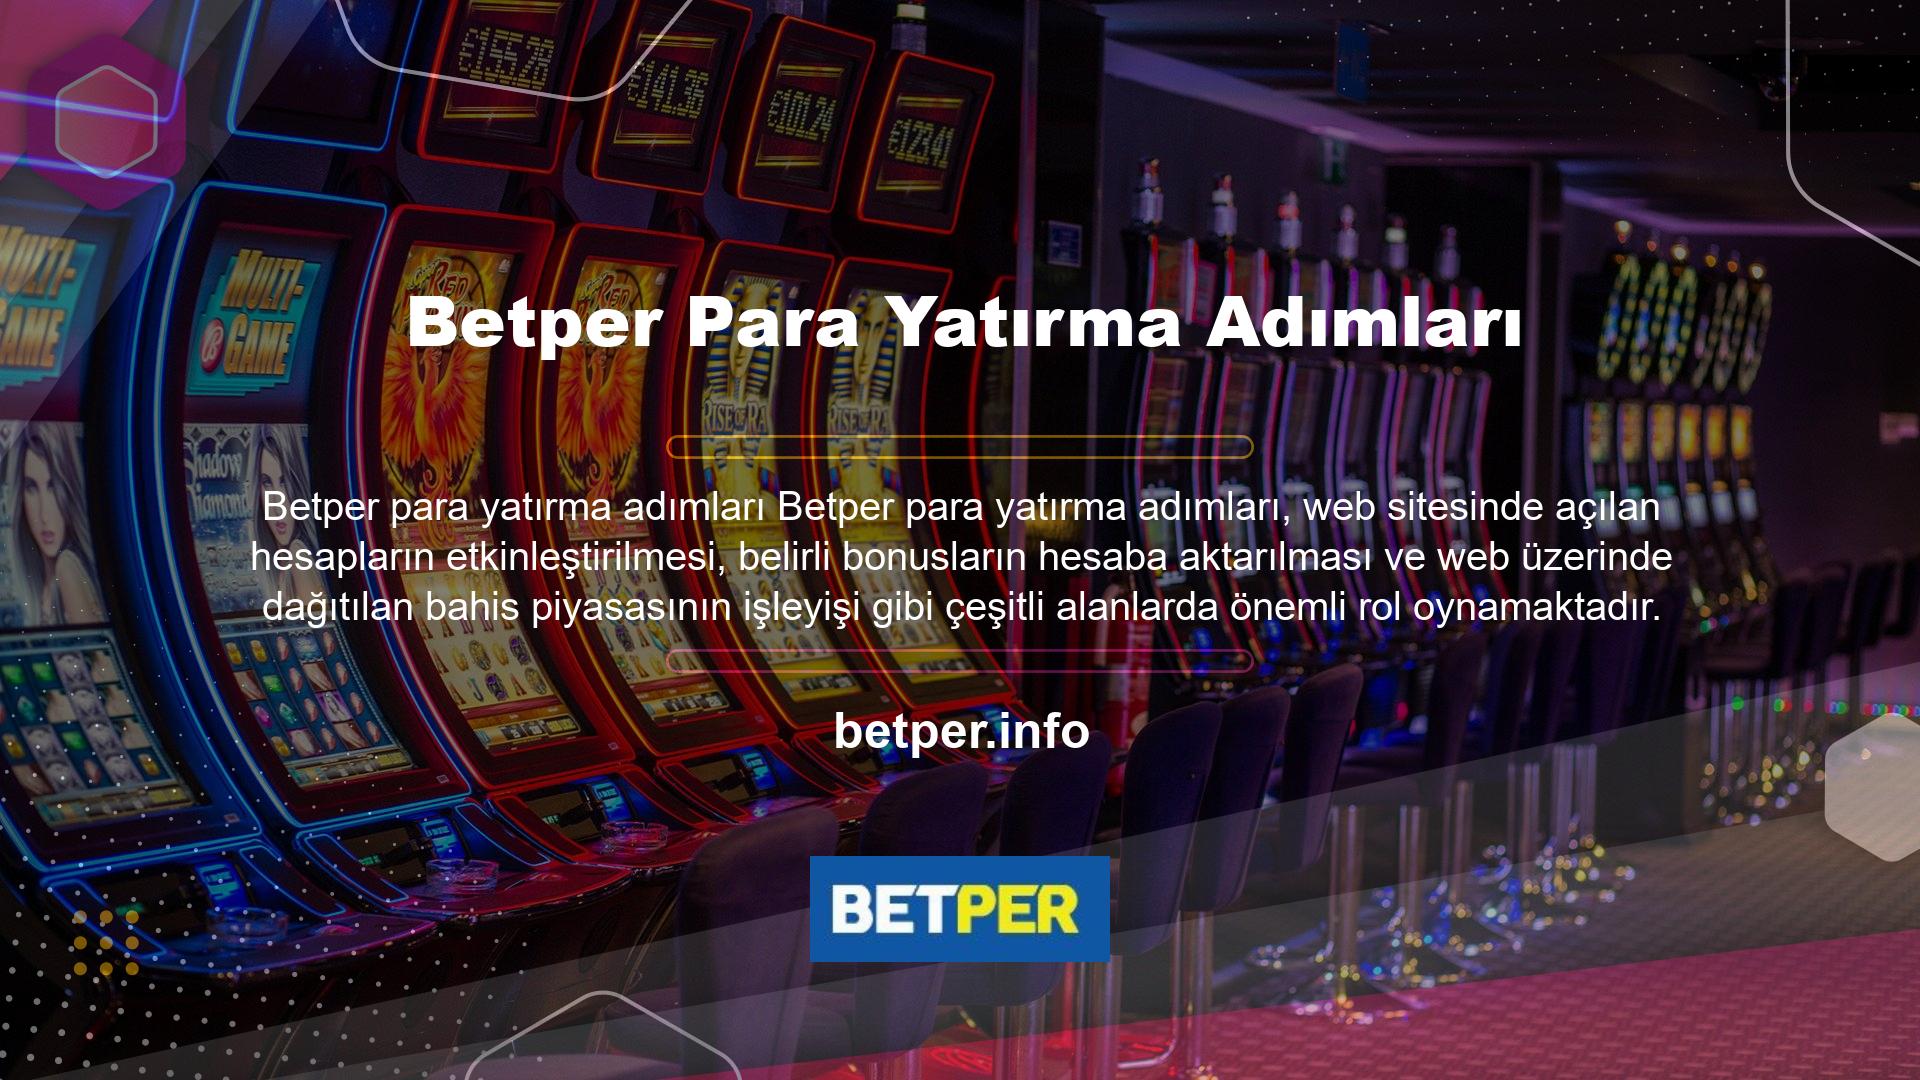 Betper Company, para yatırma adımlarını kolayca tamamlamak için açık ve anlaşılması kolay bir sistem oluşturmuştur